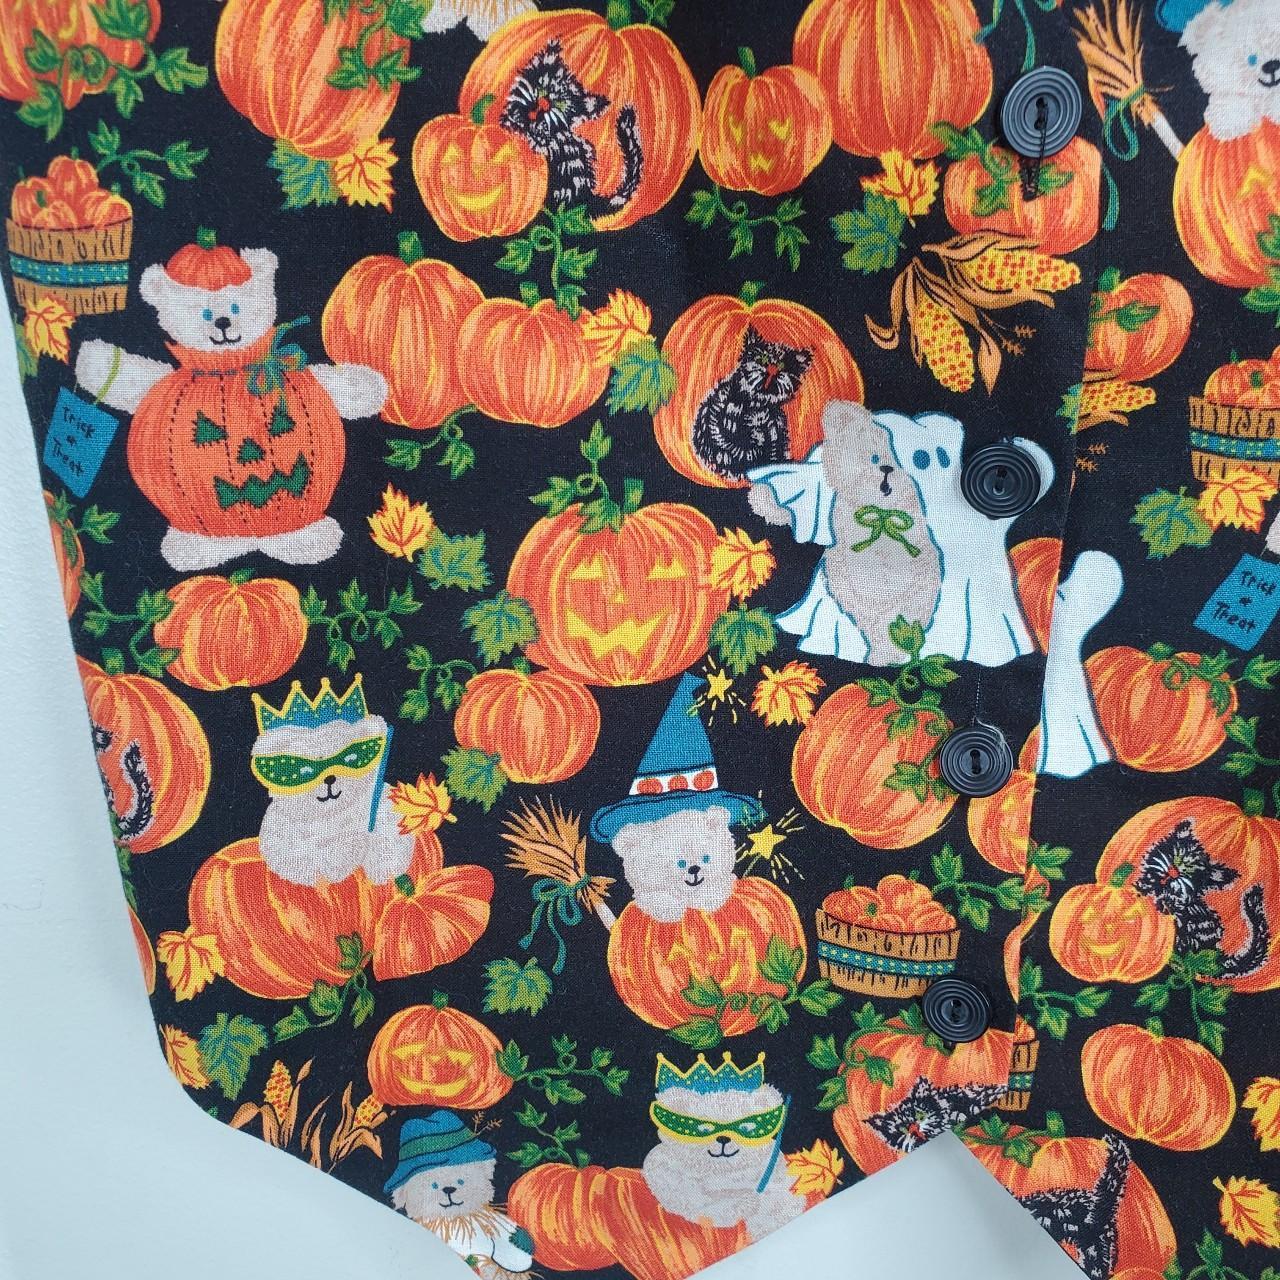 Basic Editions vintage Halloween vest pumpkins &... - Depop